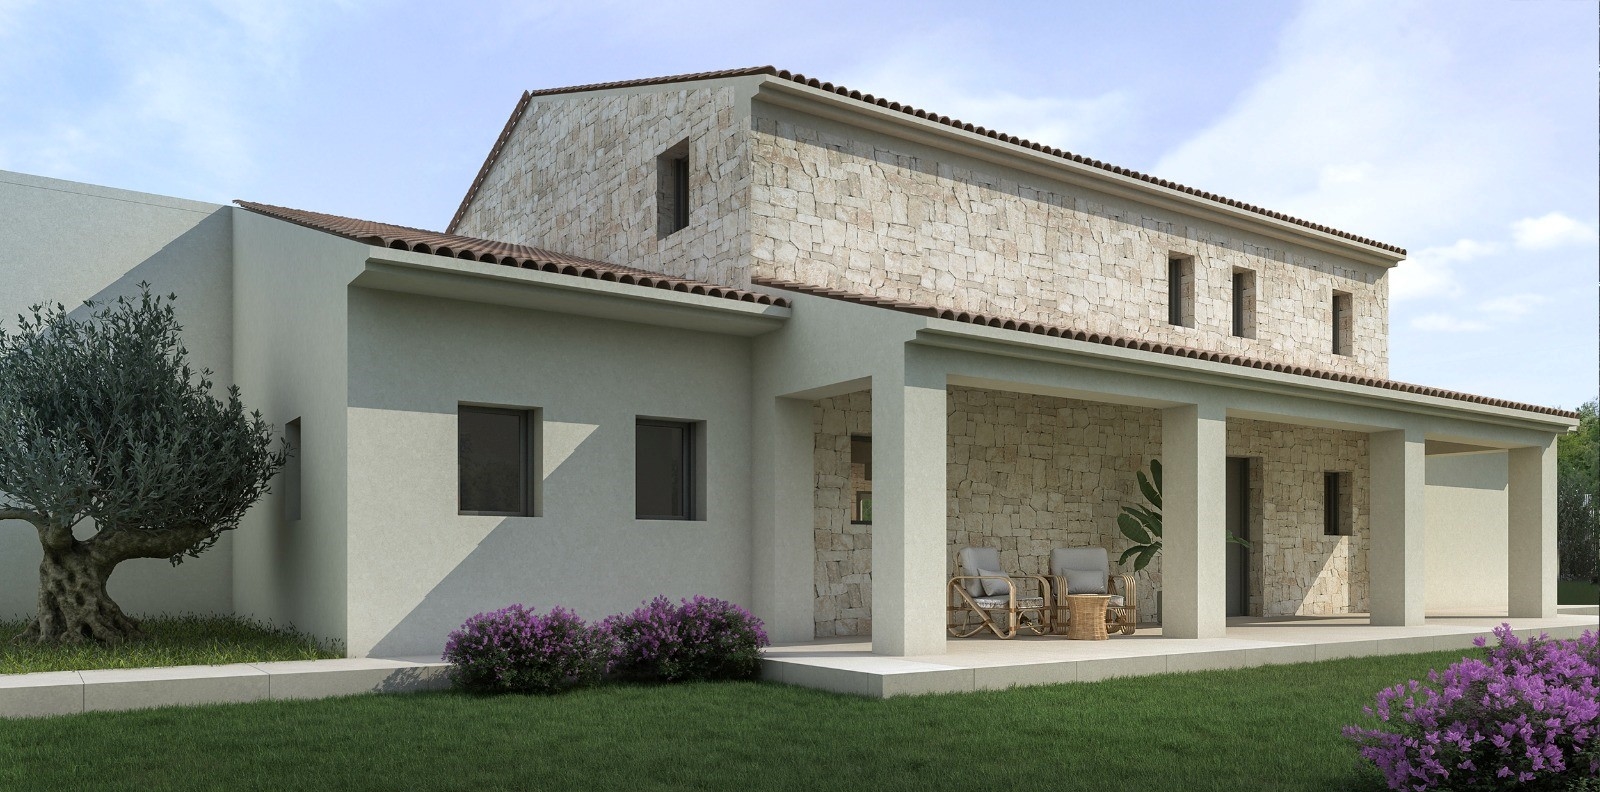 New build Mediterranean style villa for sale in Moraira, Costa Blanca